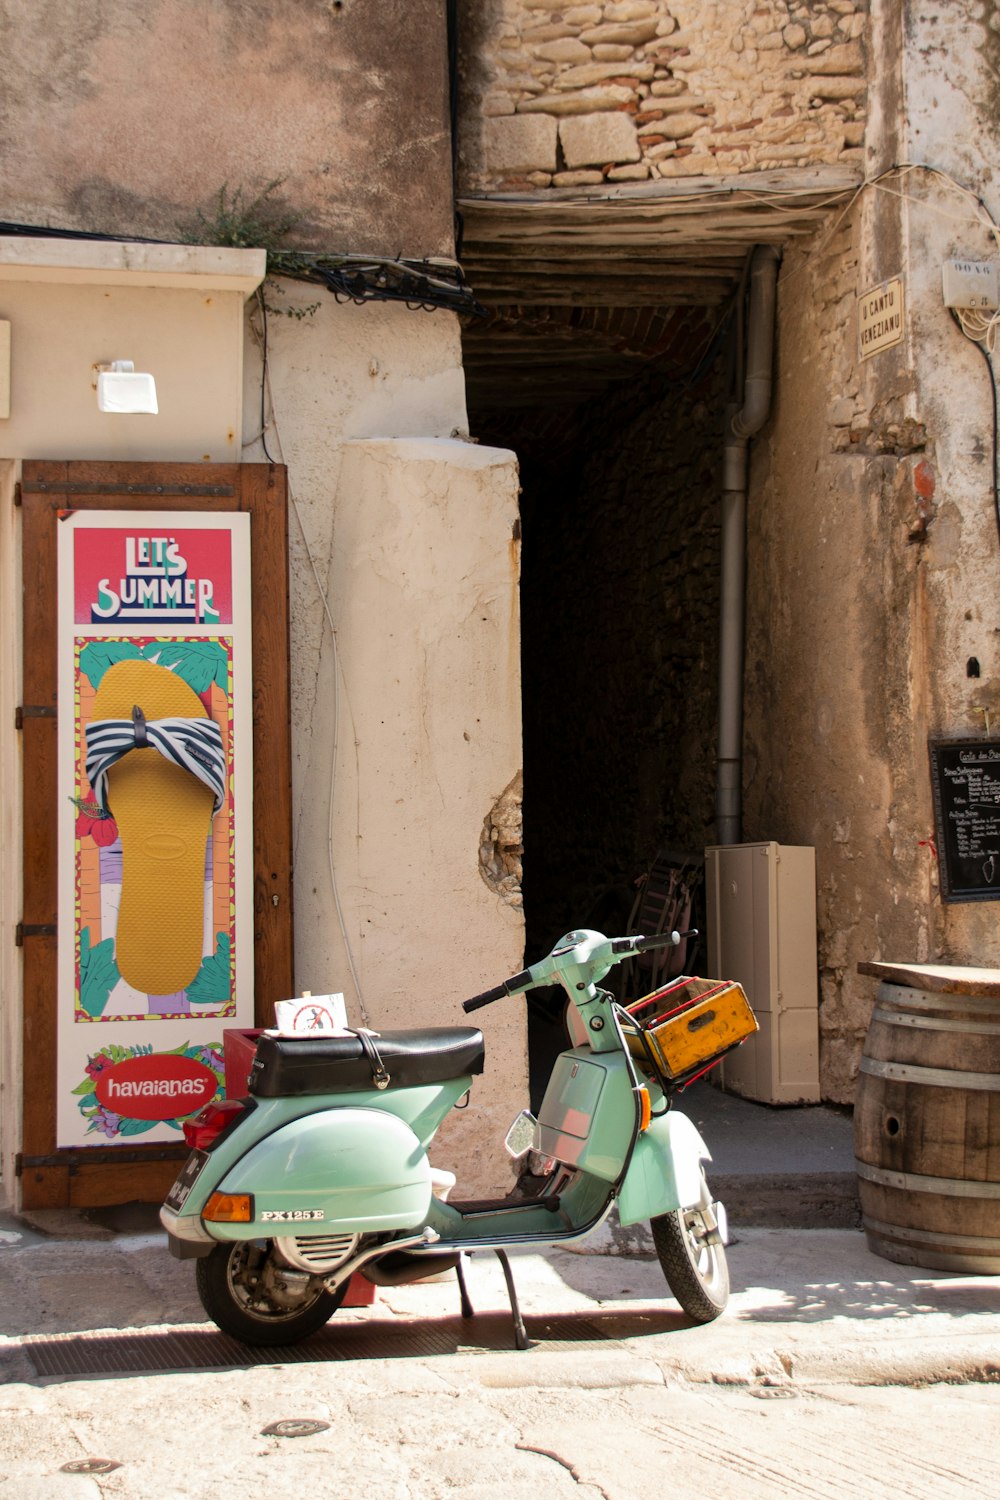 teal motor scooter near brown wooden door